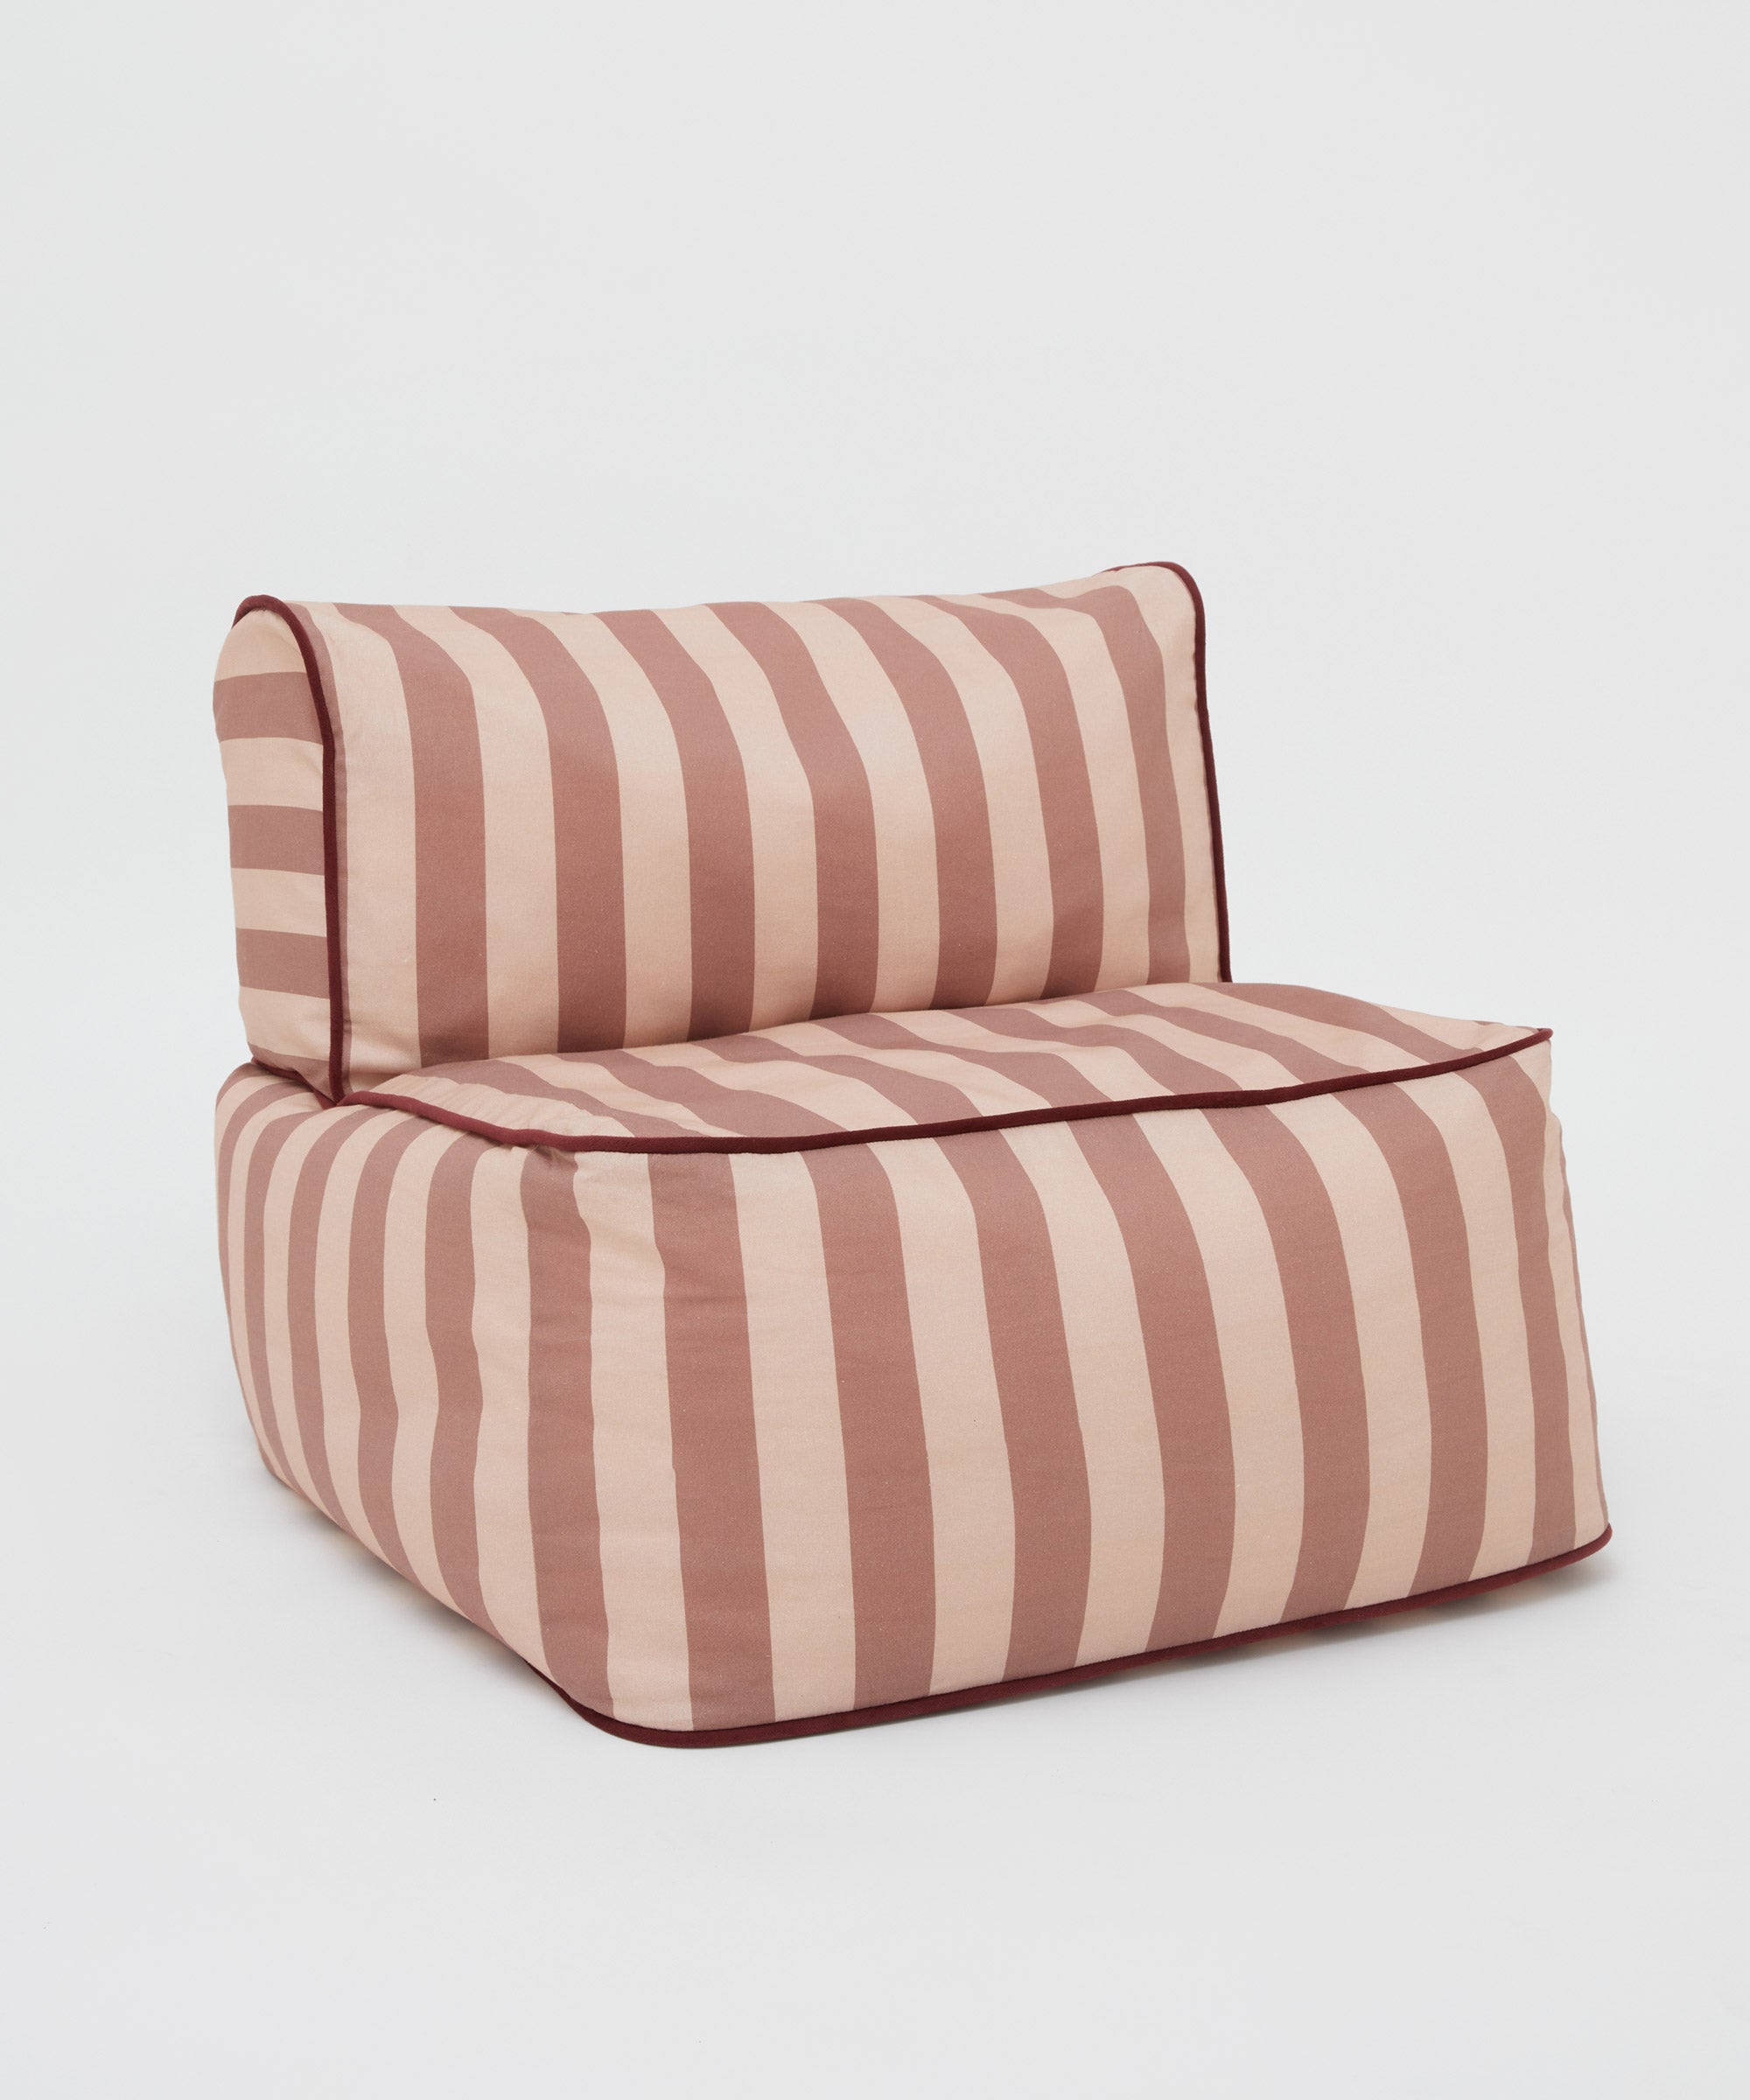 Striped Toddler Lounger – Pink